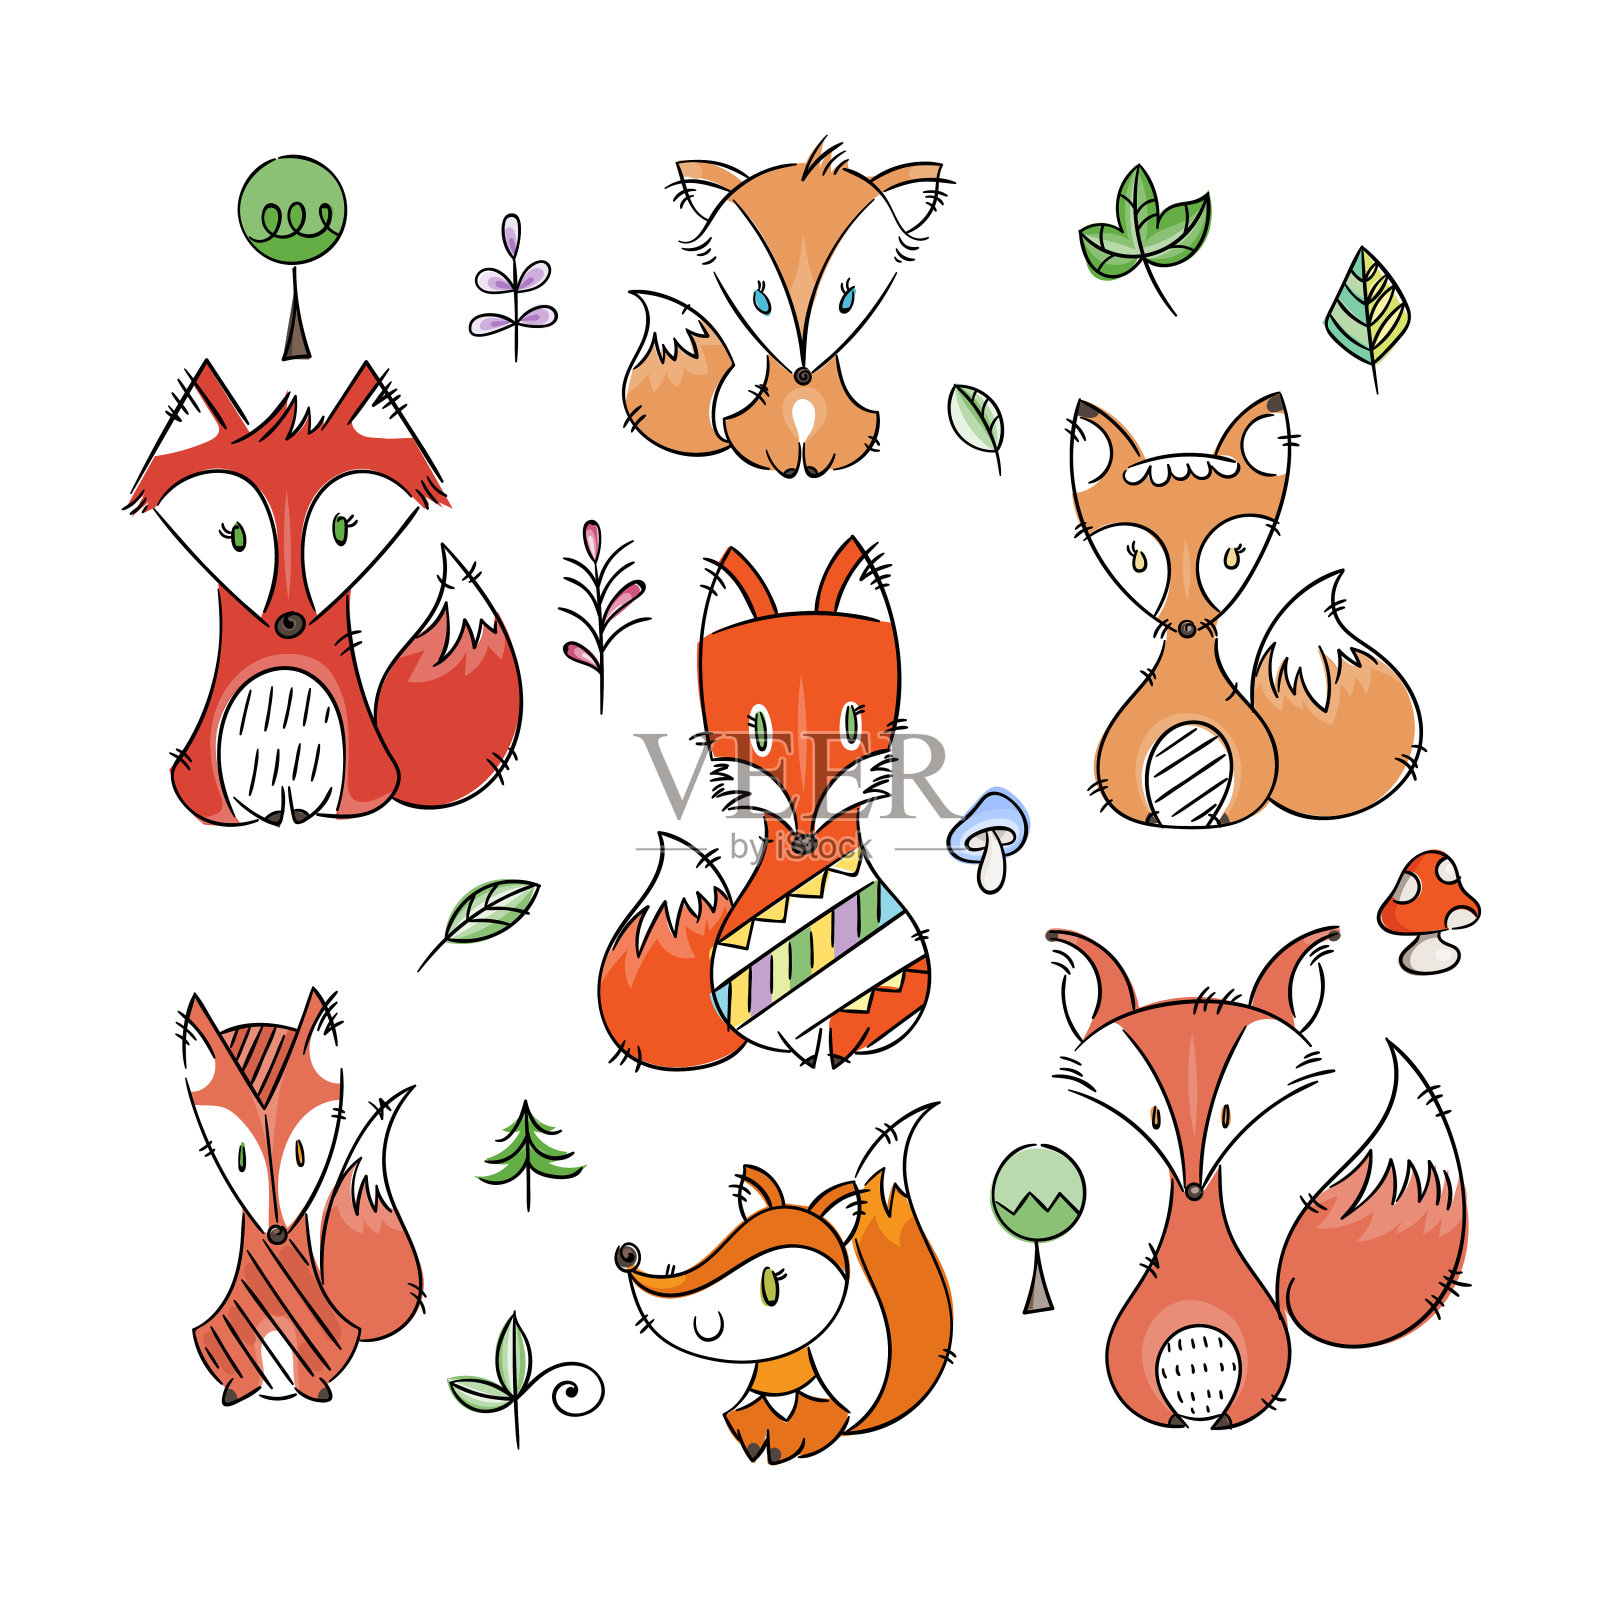 一套可爱的涂鸦狐狸在简单的平面风格设计元素图片